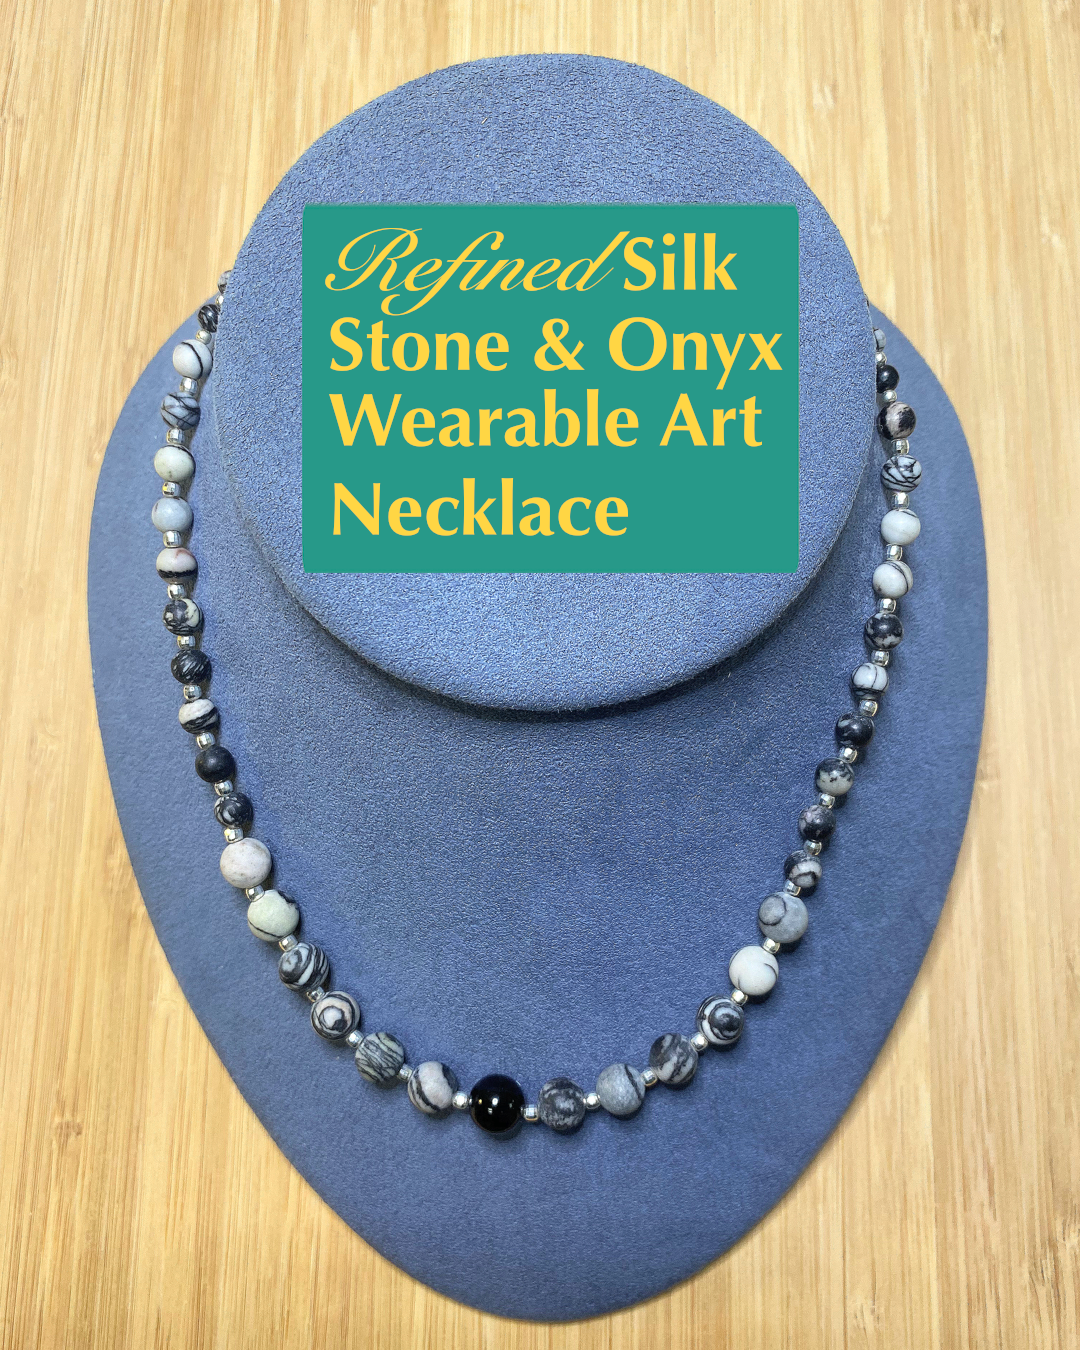 Refined Silkstone & Onyx Wearable Art Necklace